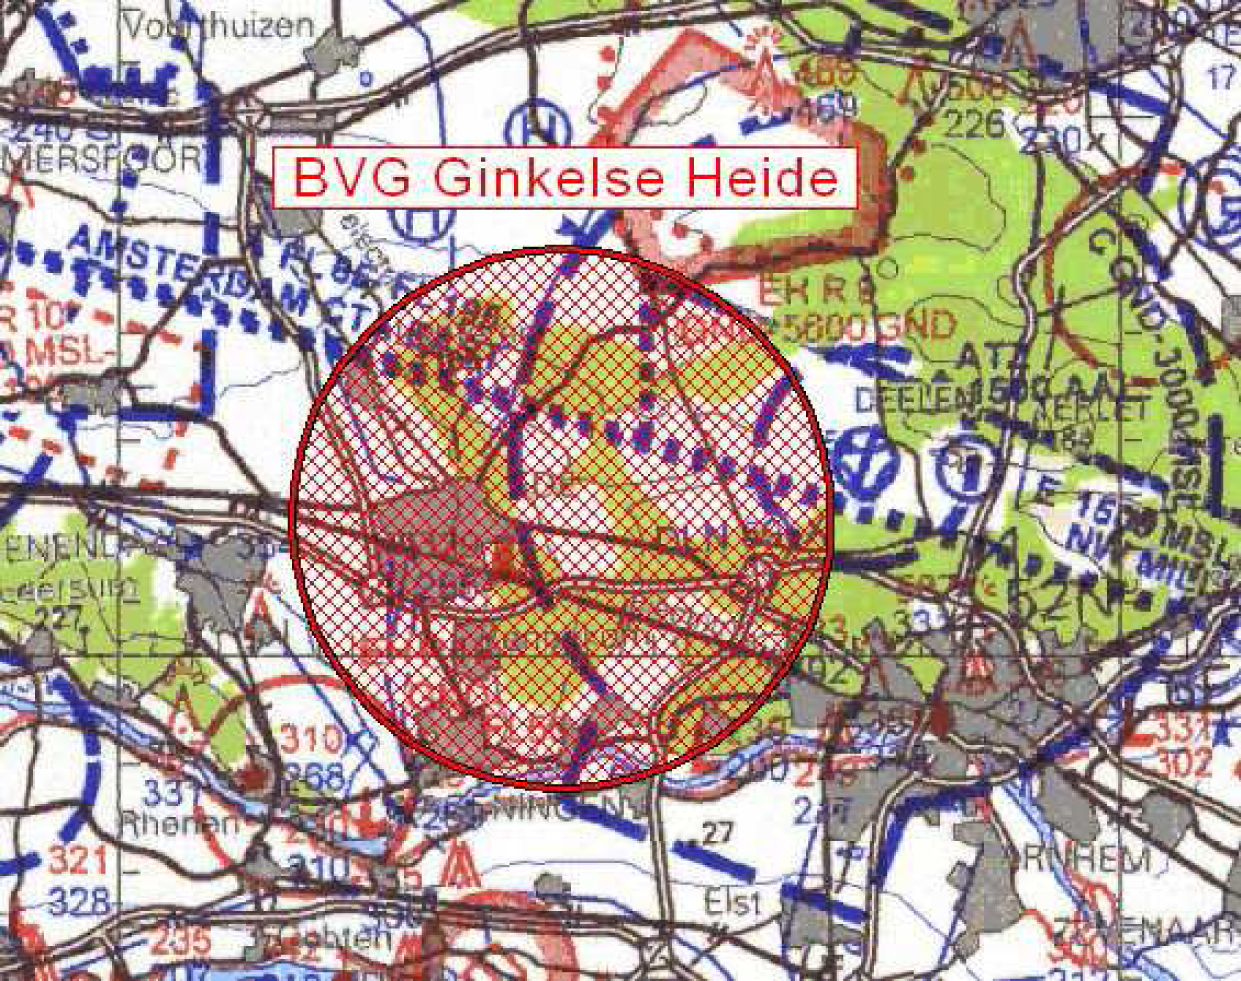 BVG Ginkelse Heide